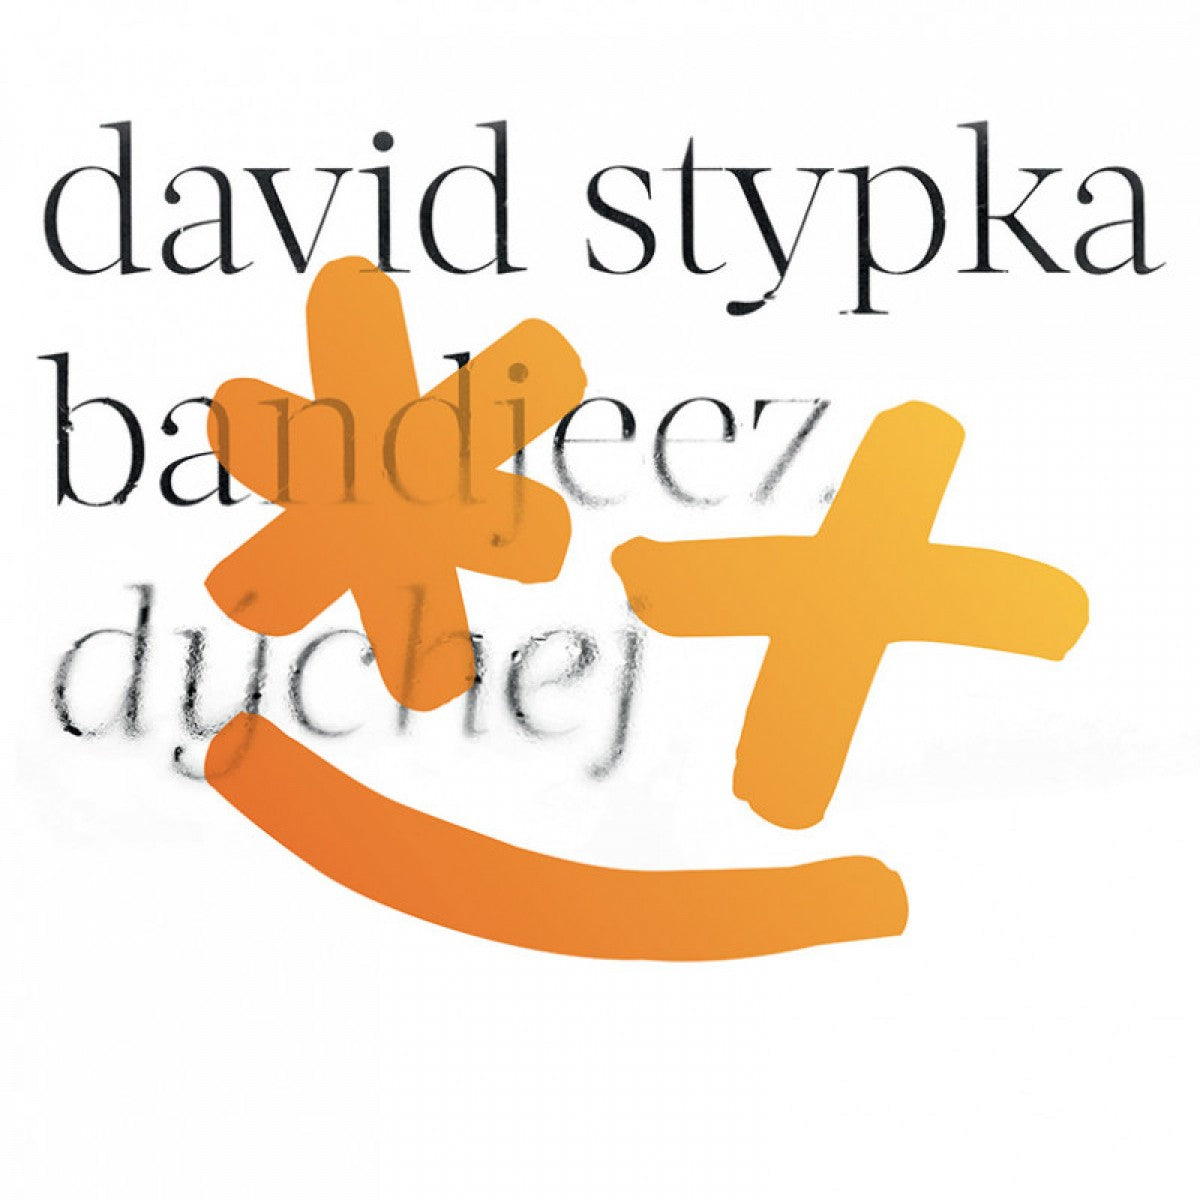 David Stypka : Dychej CD